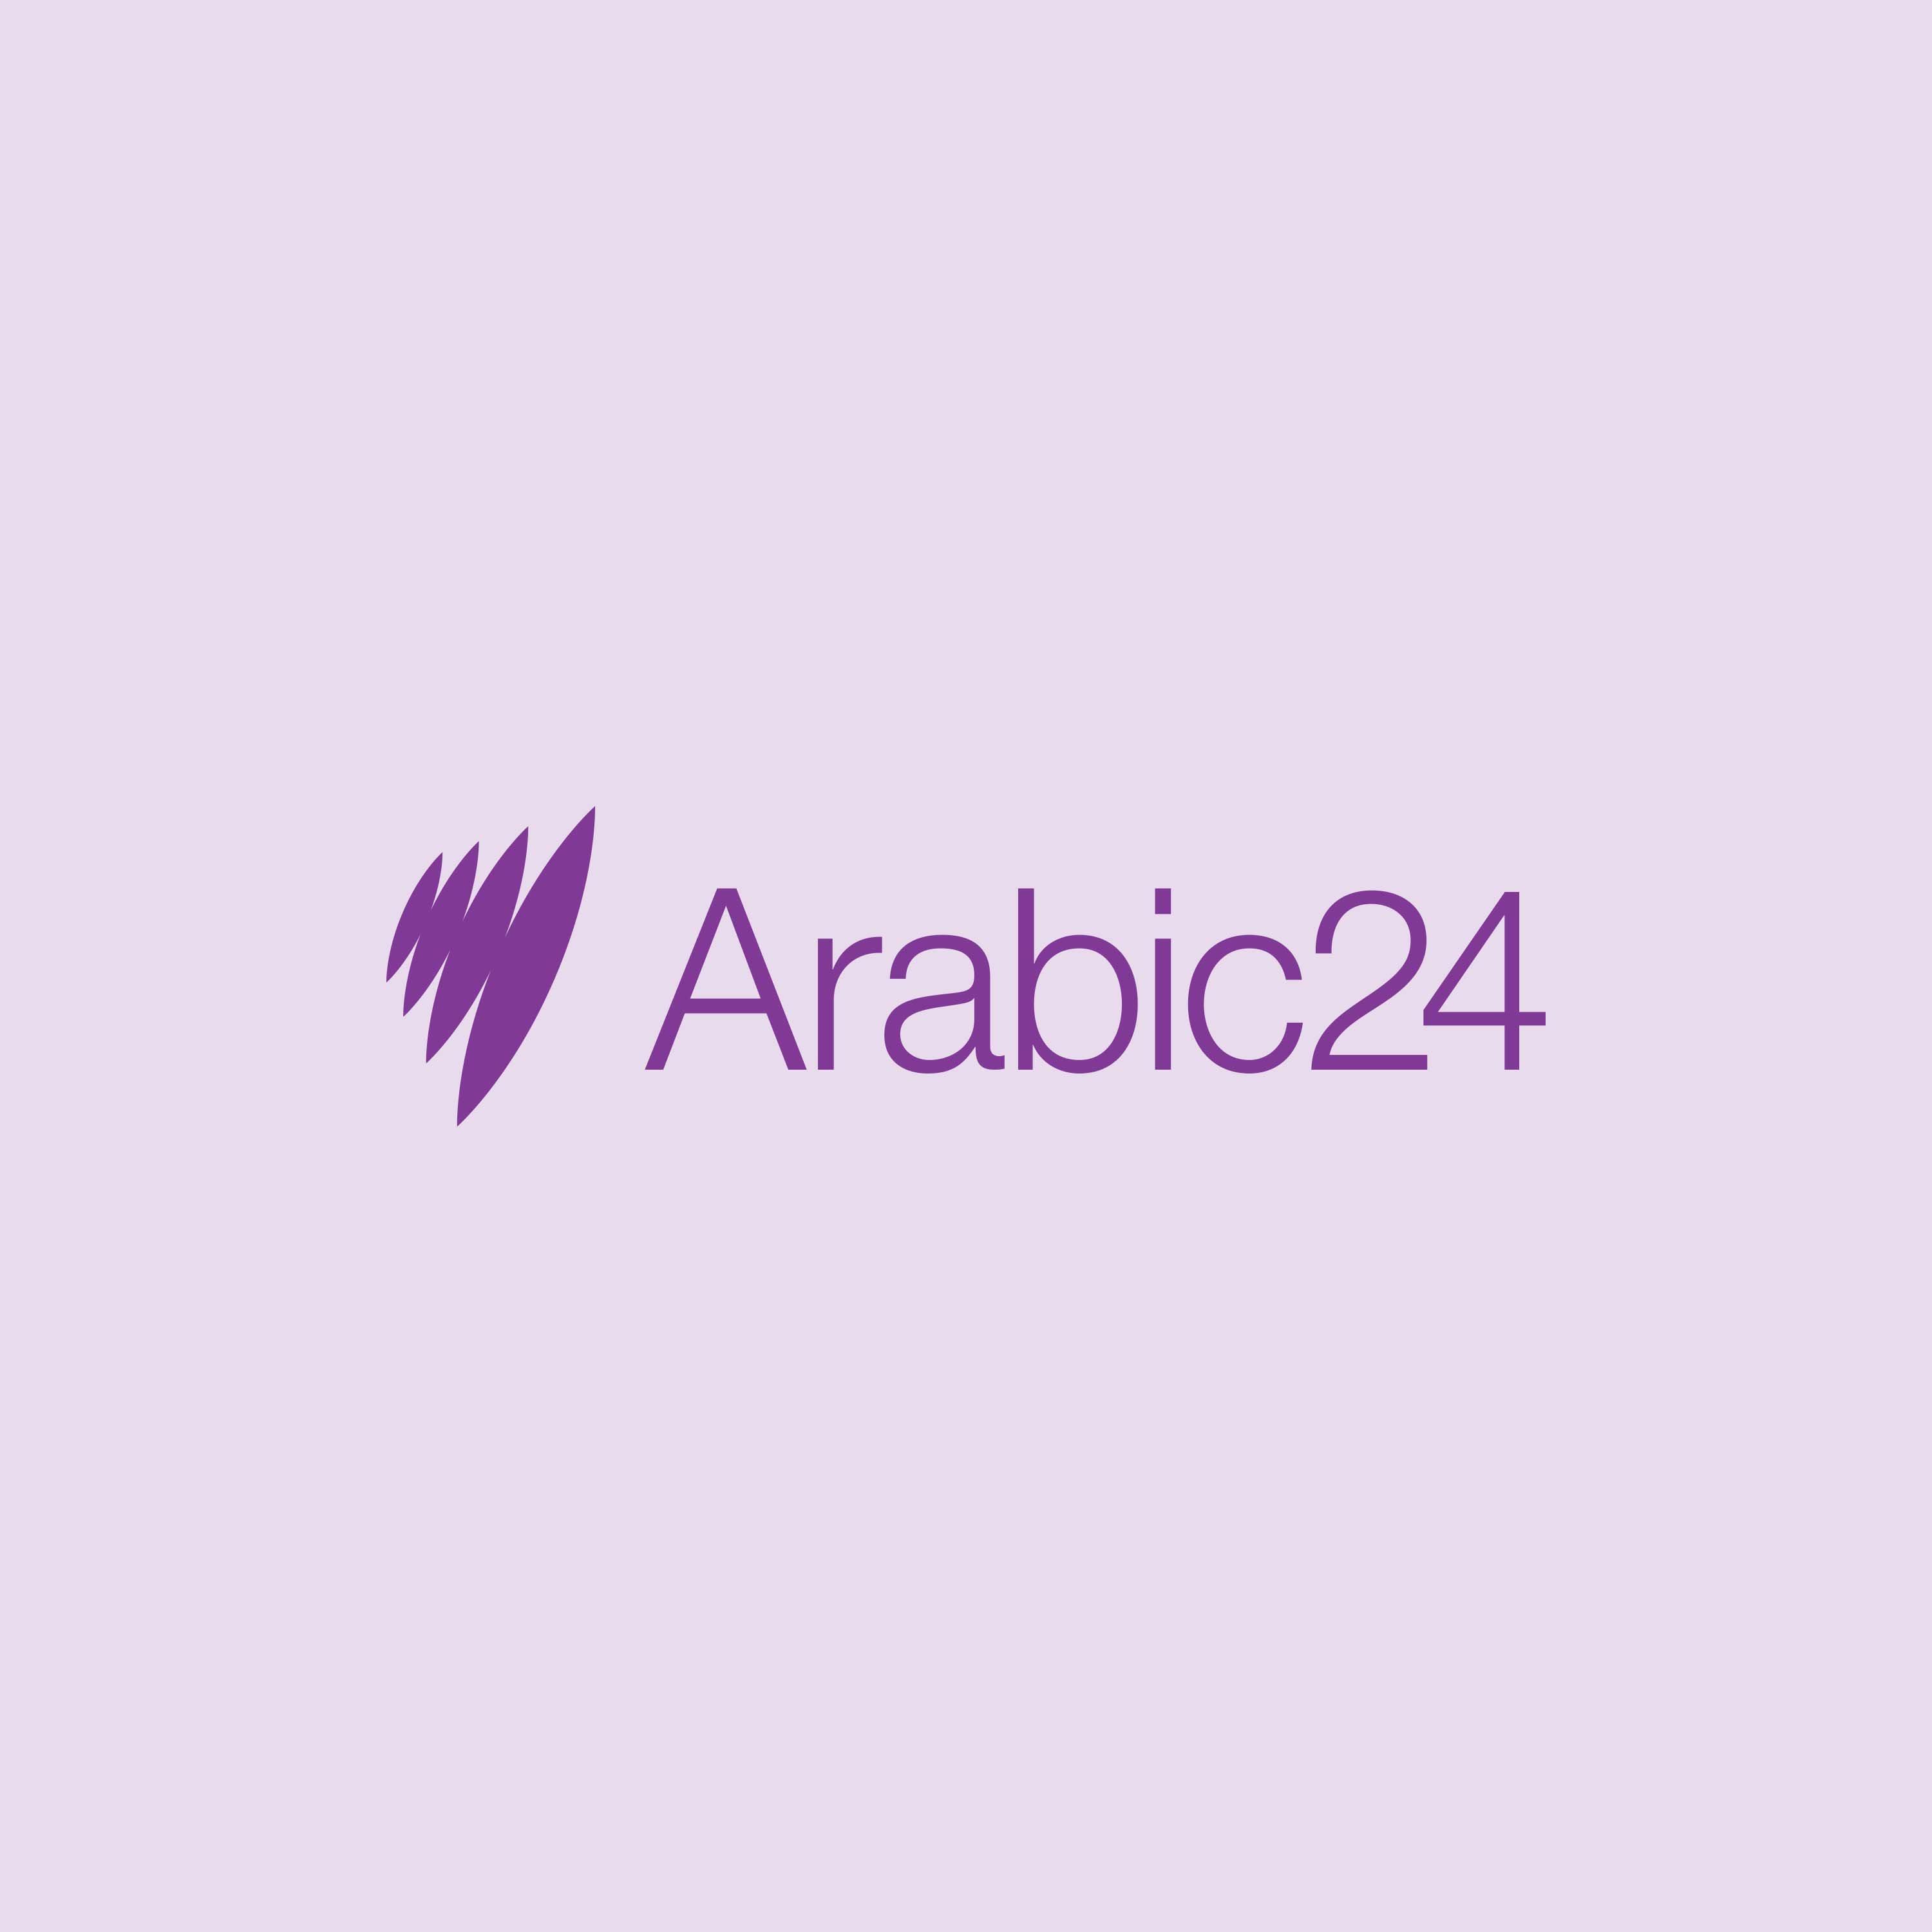 SBS Arabic24 logo